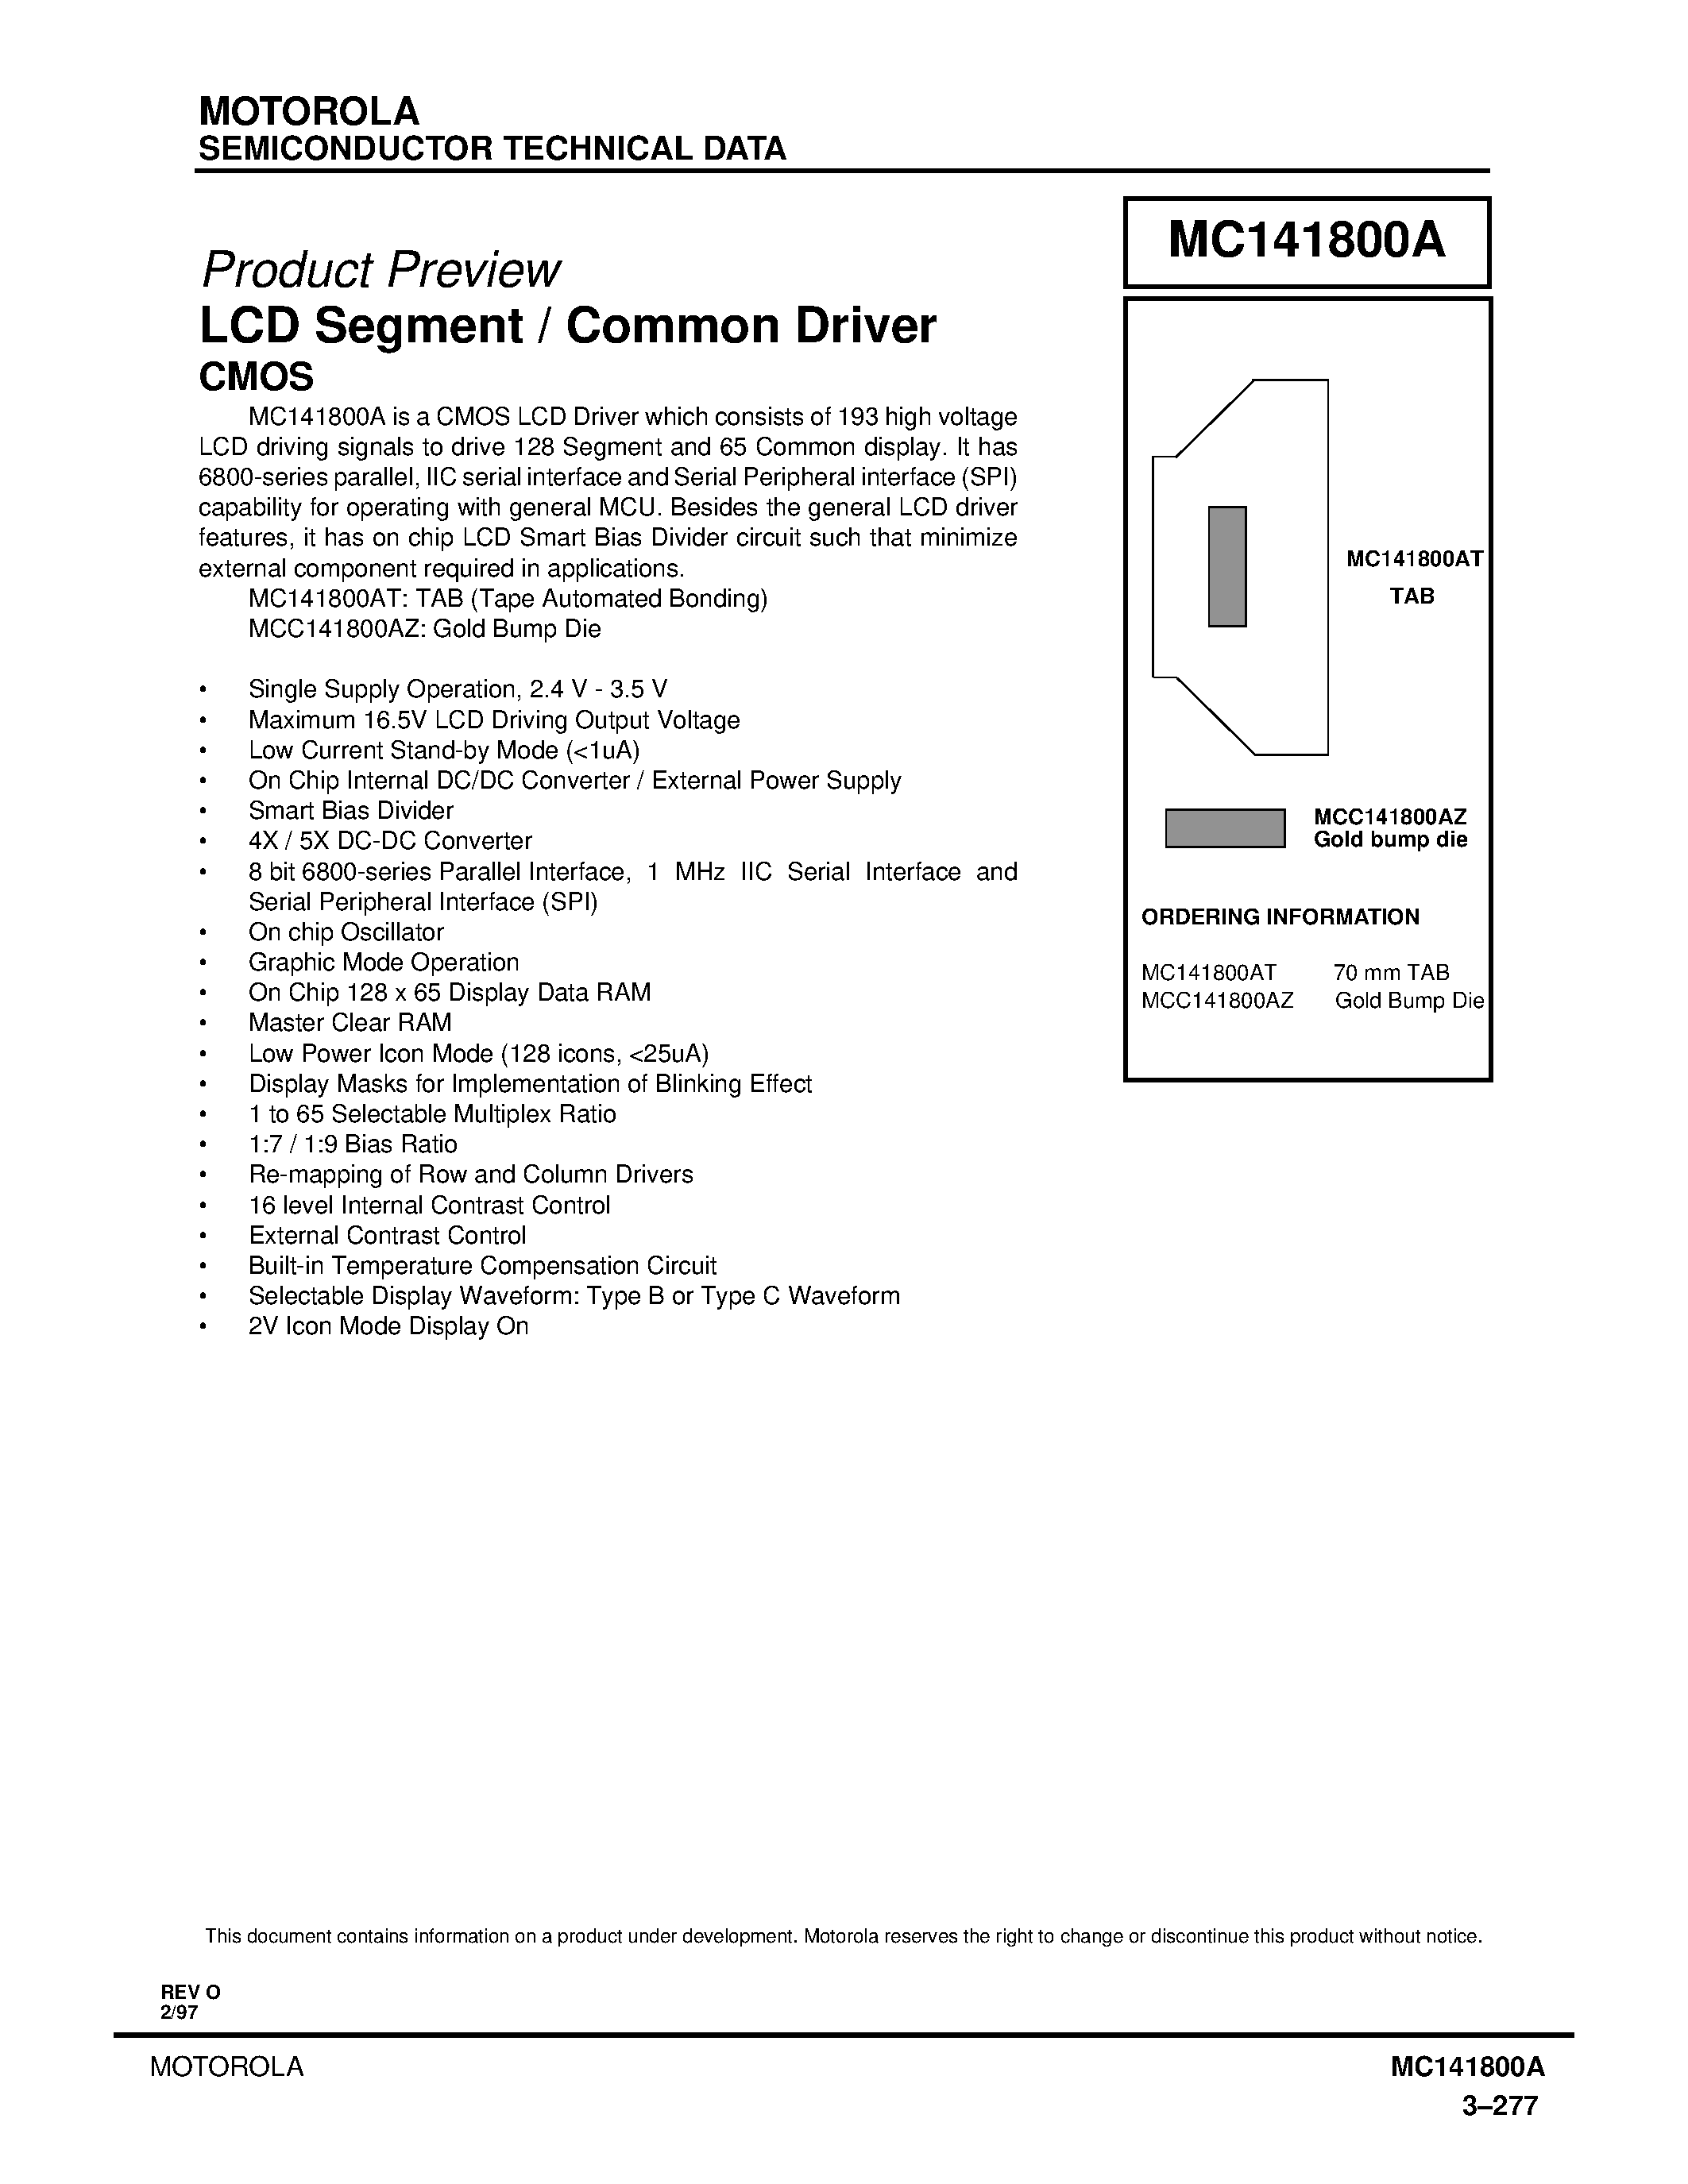 Даташит MC141800AT - LCD Segment/Common Driver страница 1